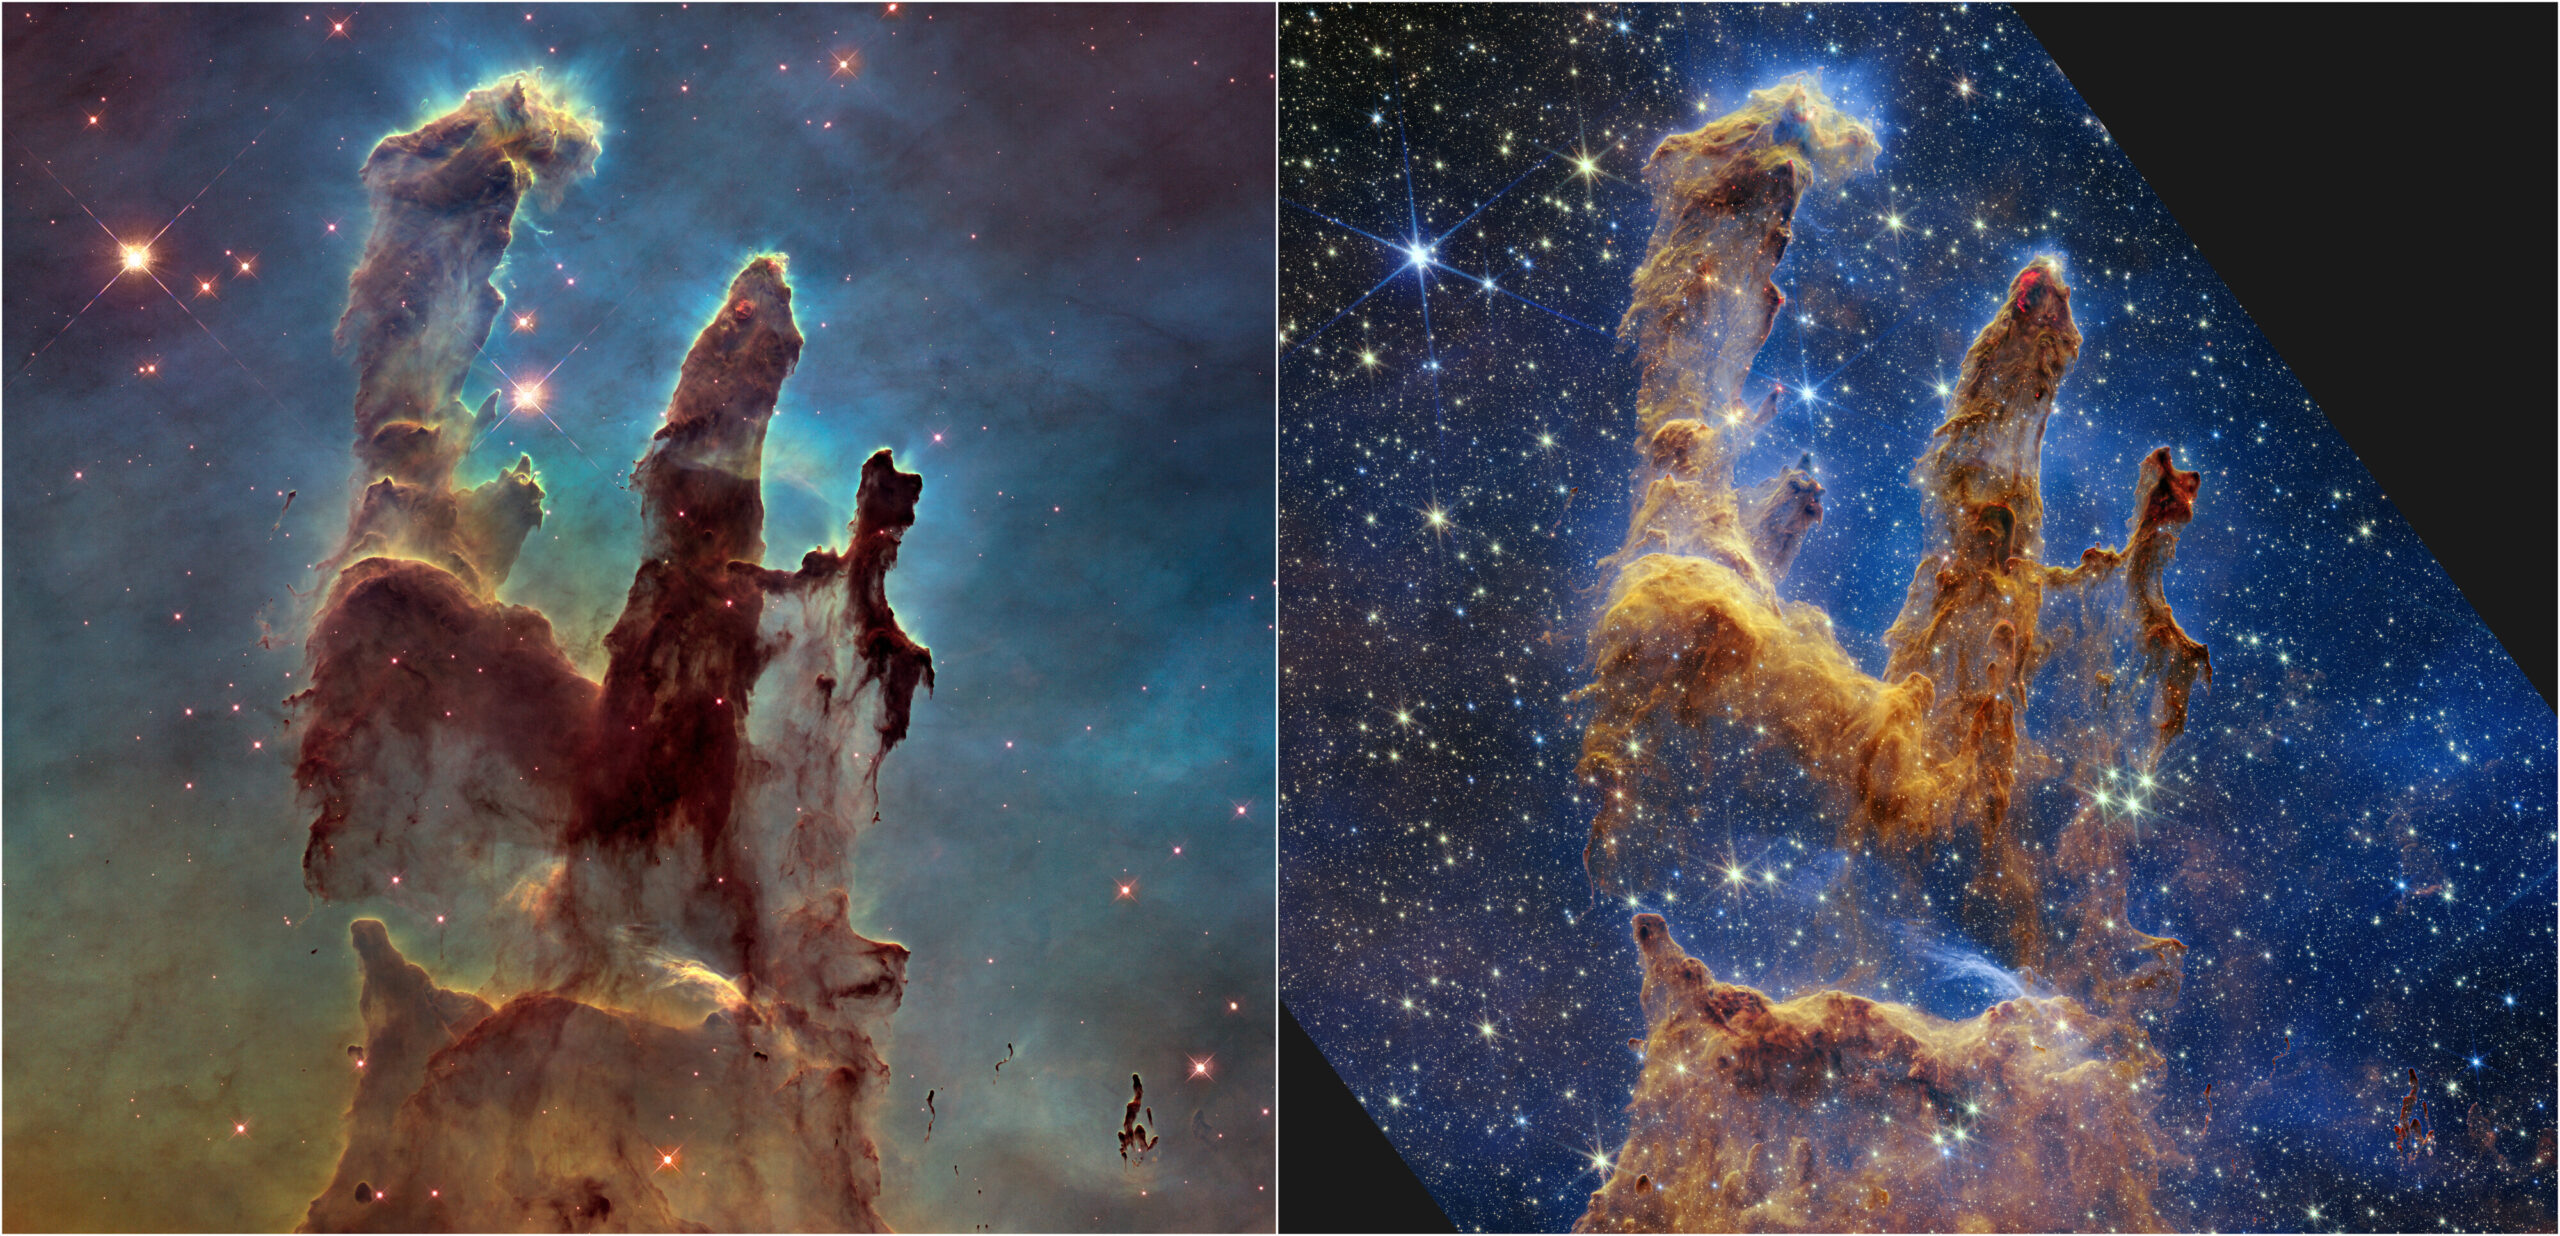 De Pilaren der Creatie, zoals gezien door Hubble (links) en Webb (rechts)